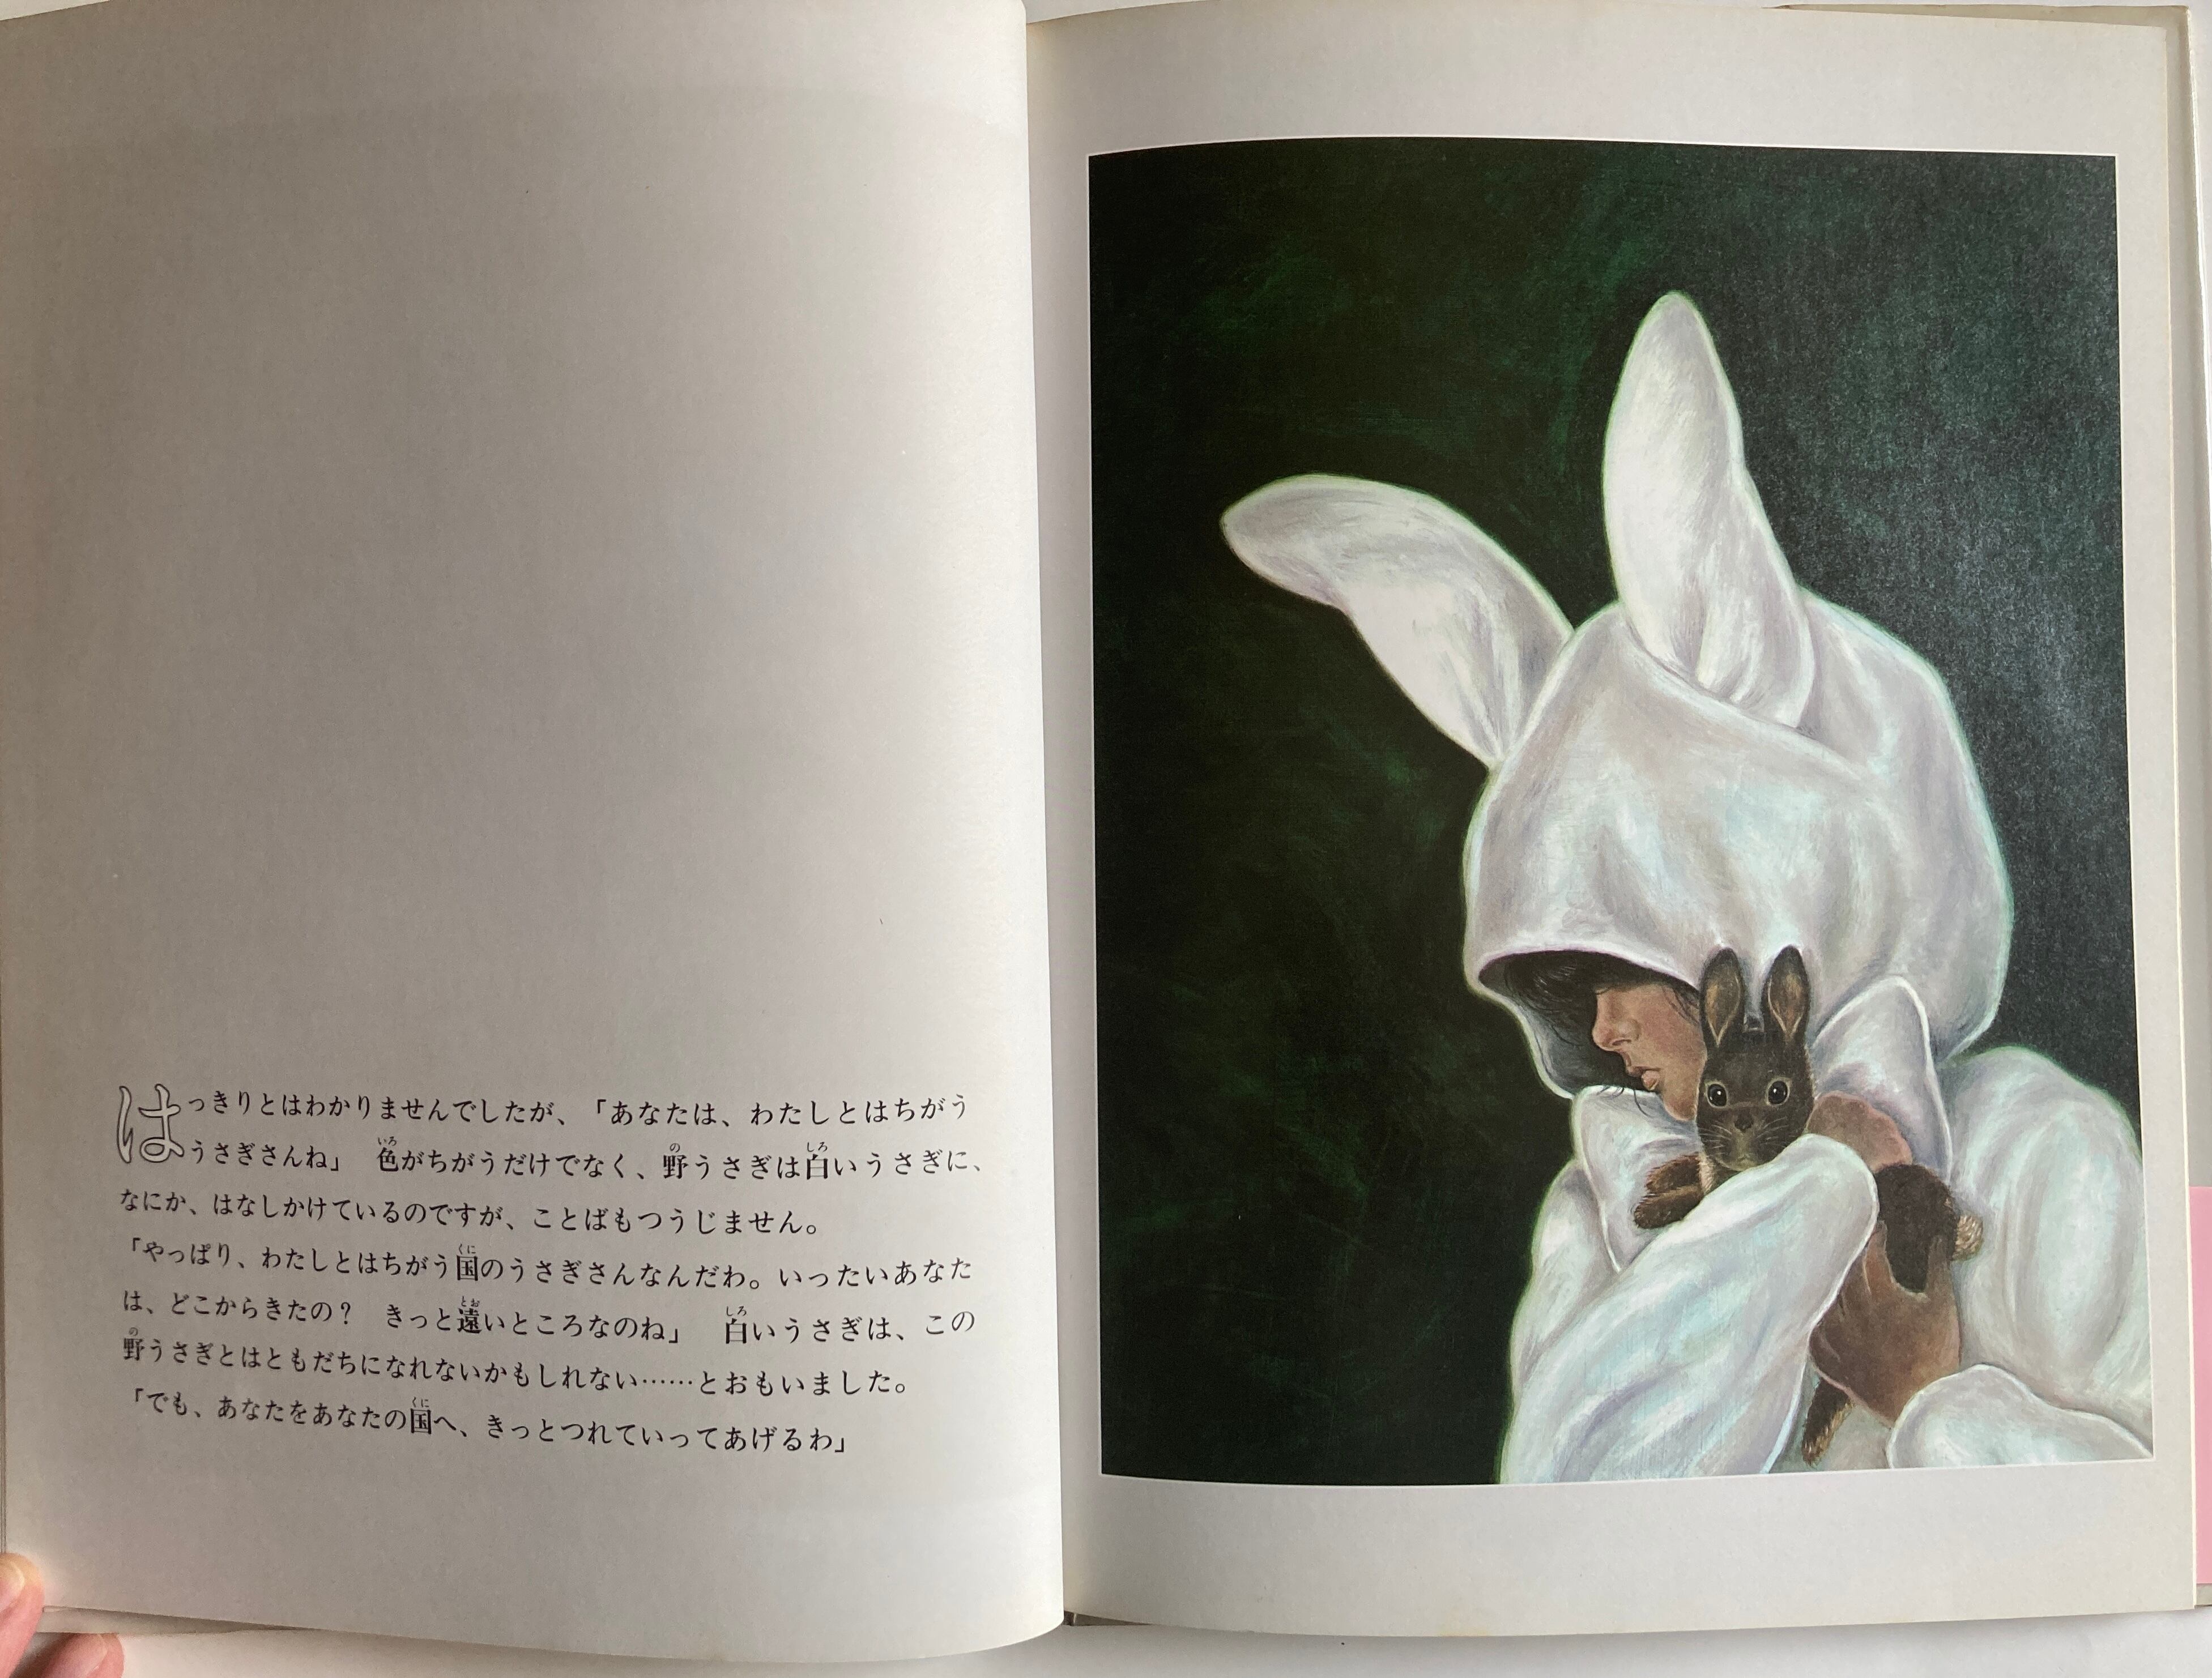 上野紀子 うさぎのおとぎばなし なかえよしを 1982年 初版 白泉社 